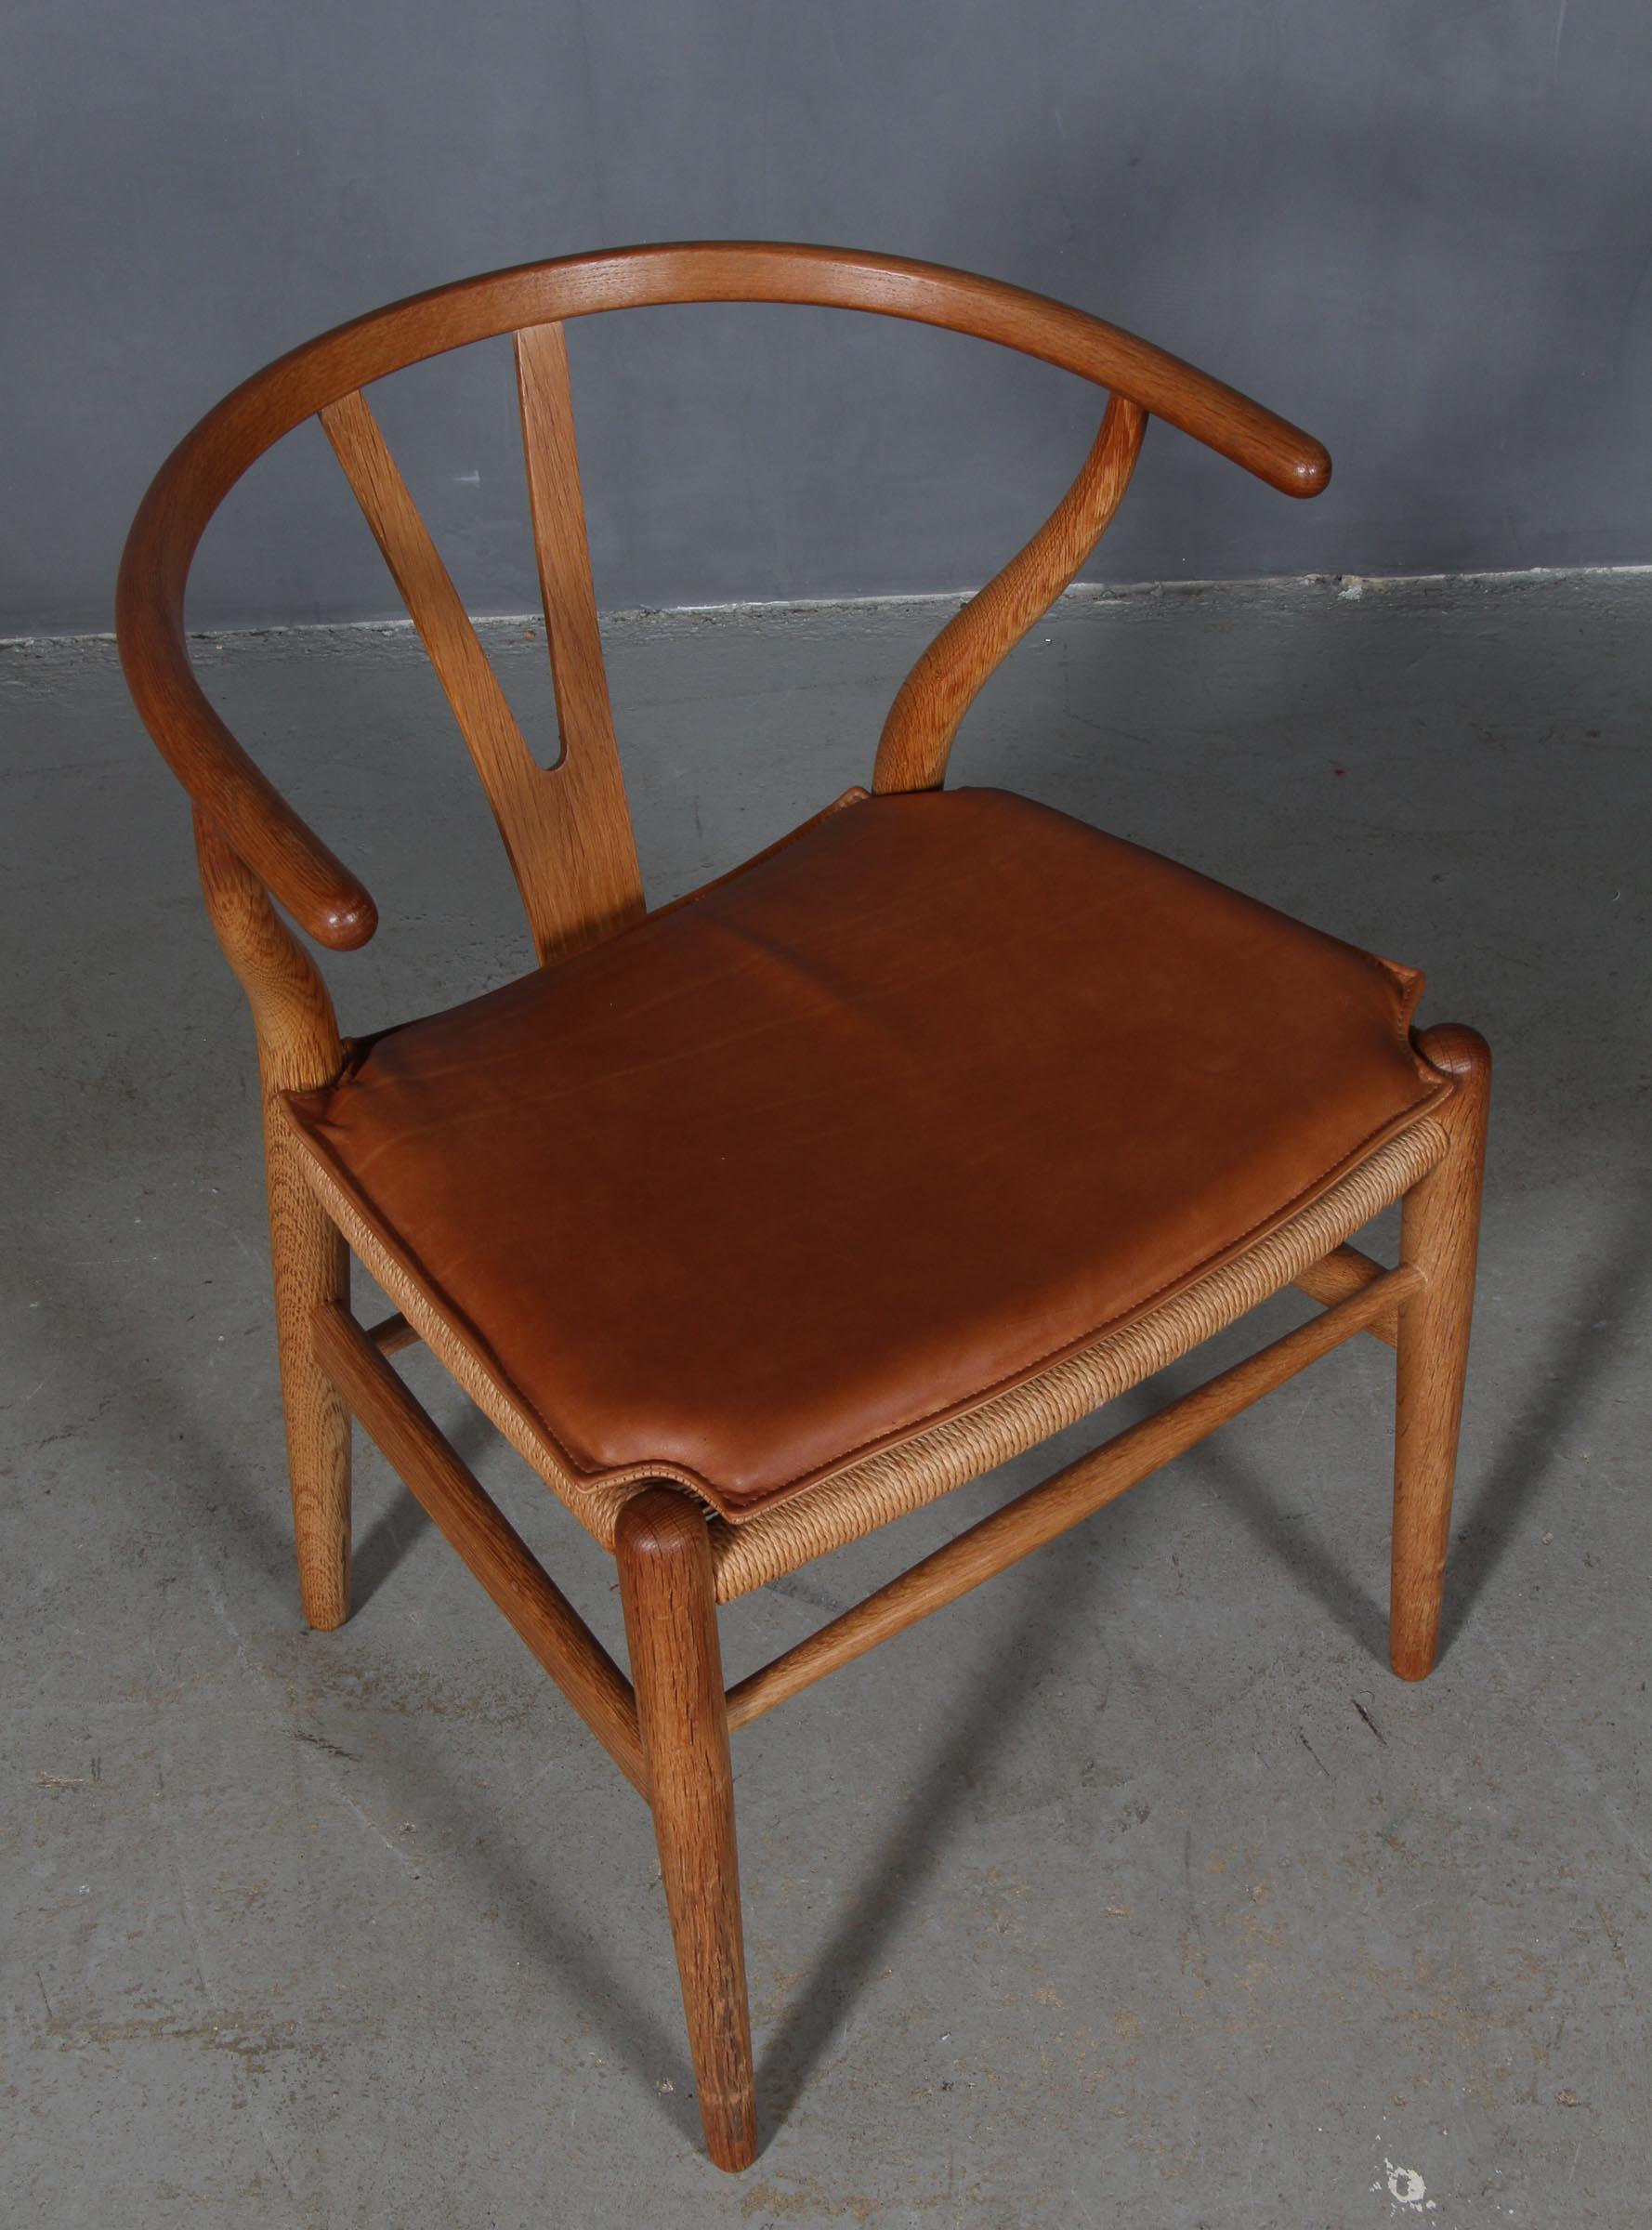 Hans J. Wegner Kissen für Querlenkerstuhl Modell CH24.

Hergestellt aus cognacfarbenem Anilinleder und Schaumstoff von guter Qualität.

Nur das Kissen, nicht der Stuhl.